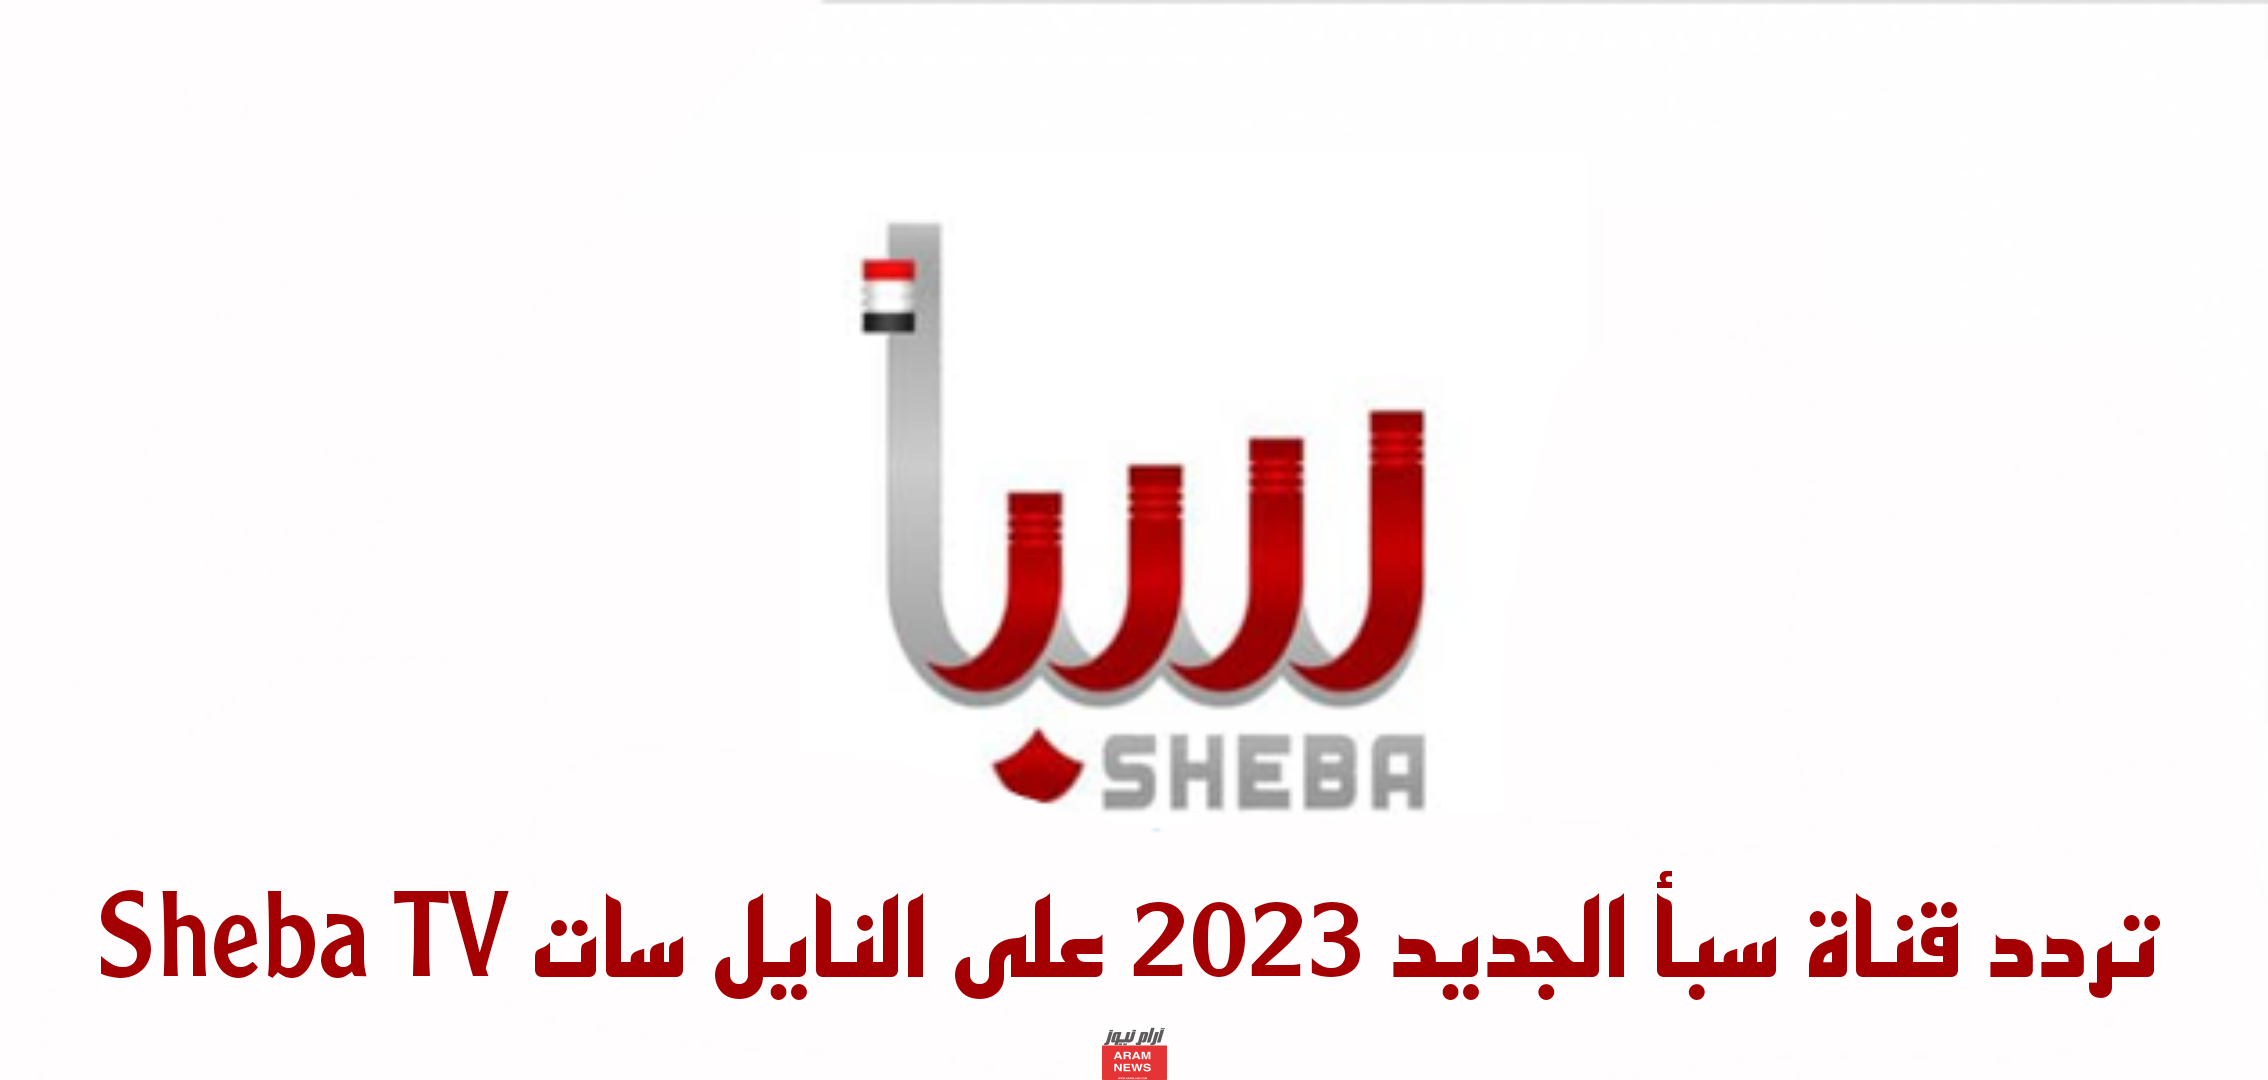 تردد قناة سبأ الجديد على النايل سات Sheba TV